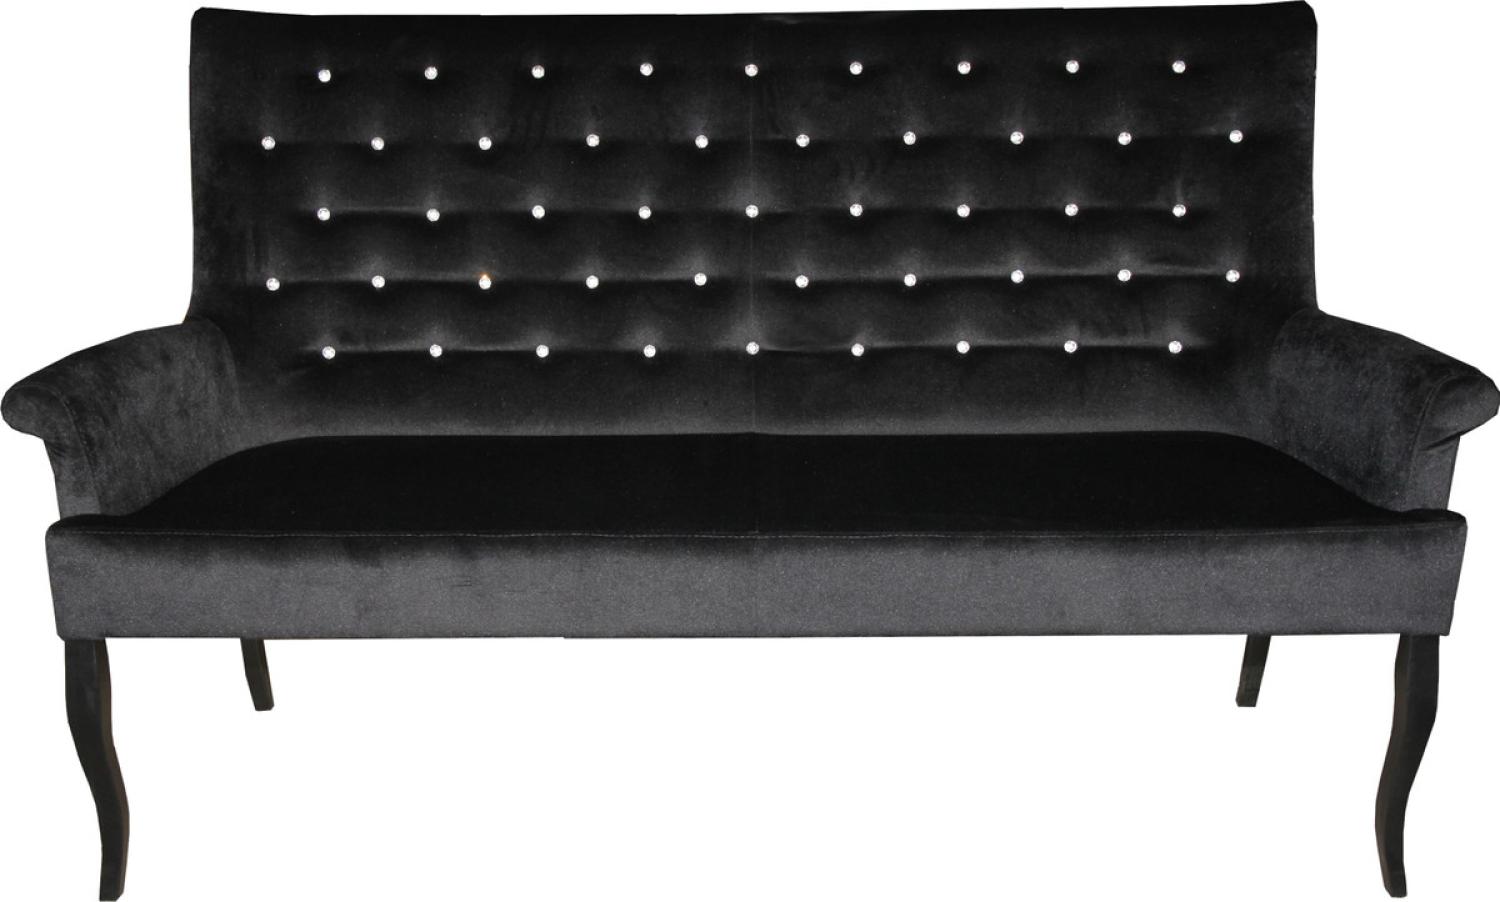 Casa Padrino Chesterfield Sitzbank / Sofa mit Bling Bling Glitzersteinen Schwarz B 180 cm, H 100 cm, T 67 cm - Esszimmer Bank - Limited Edition Bild 1